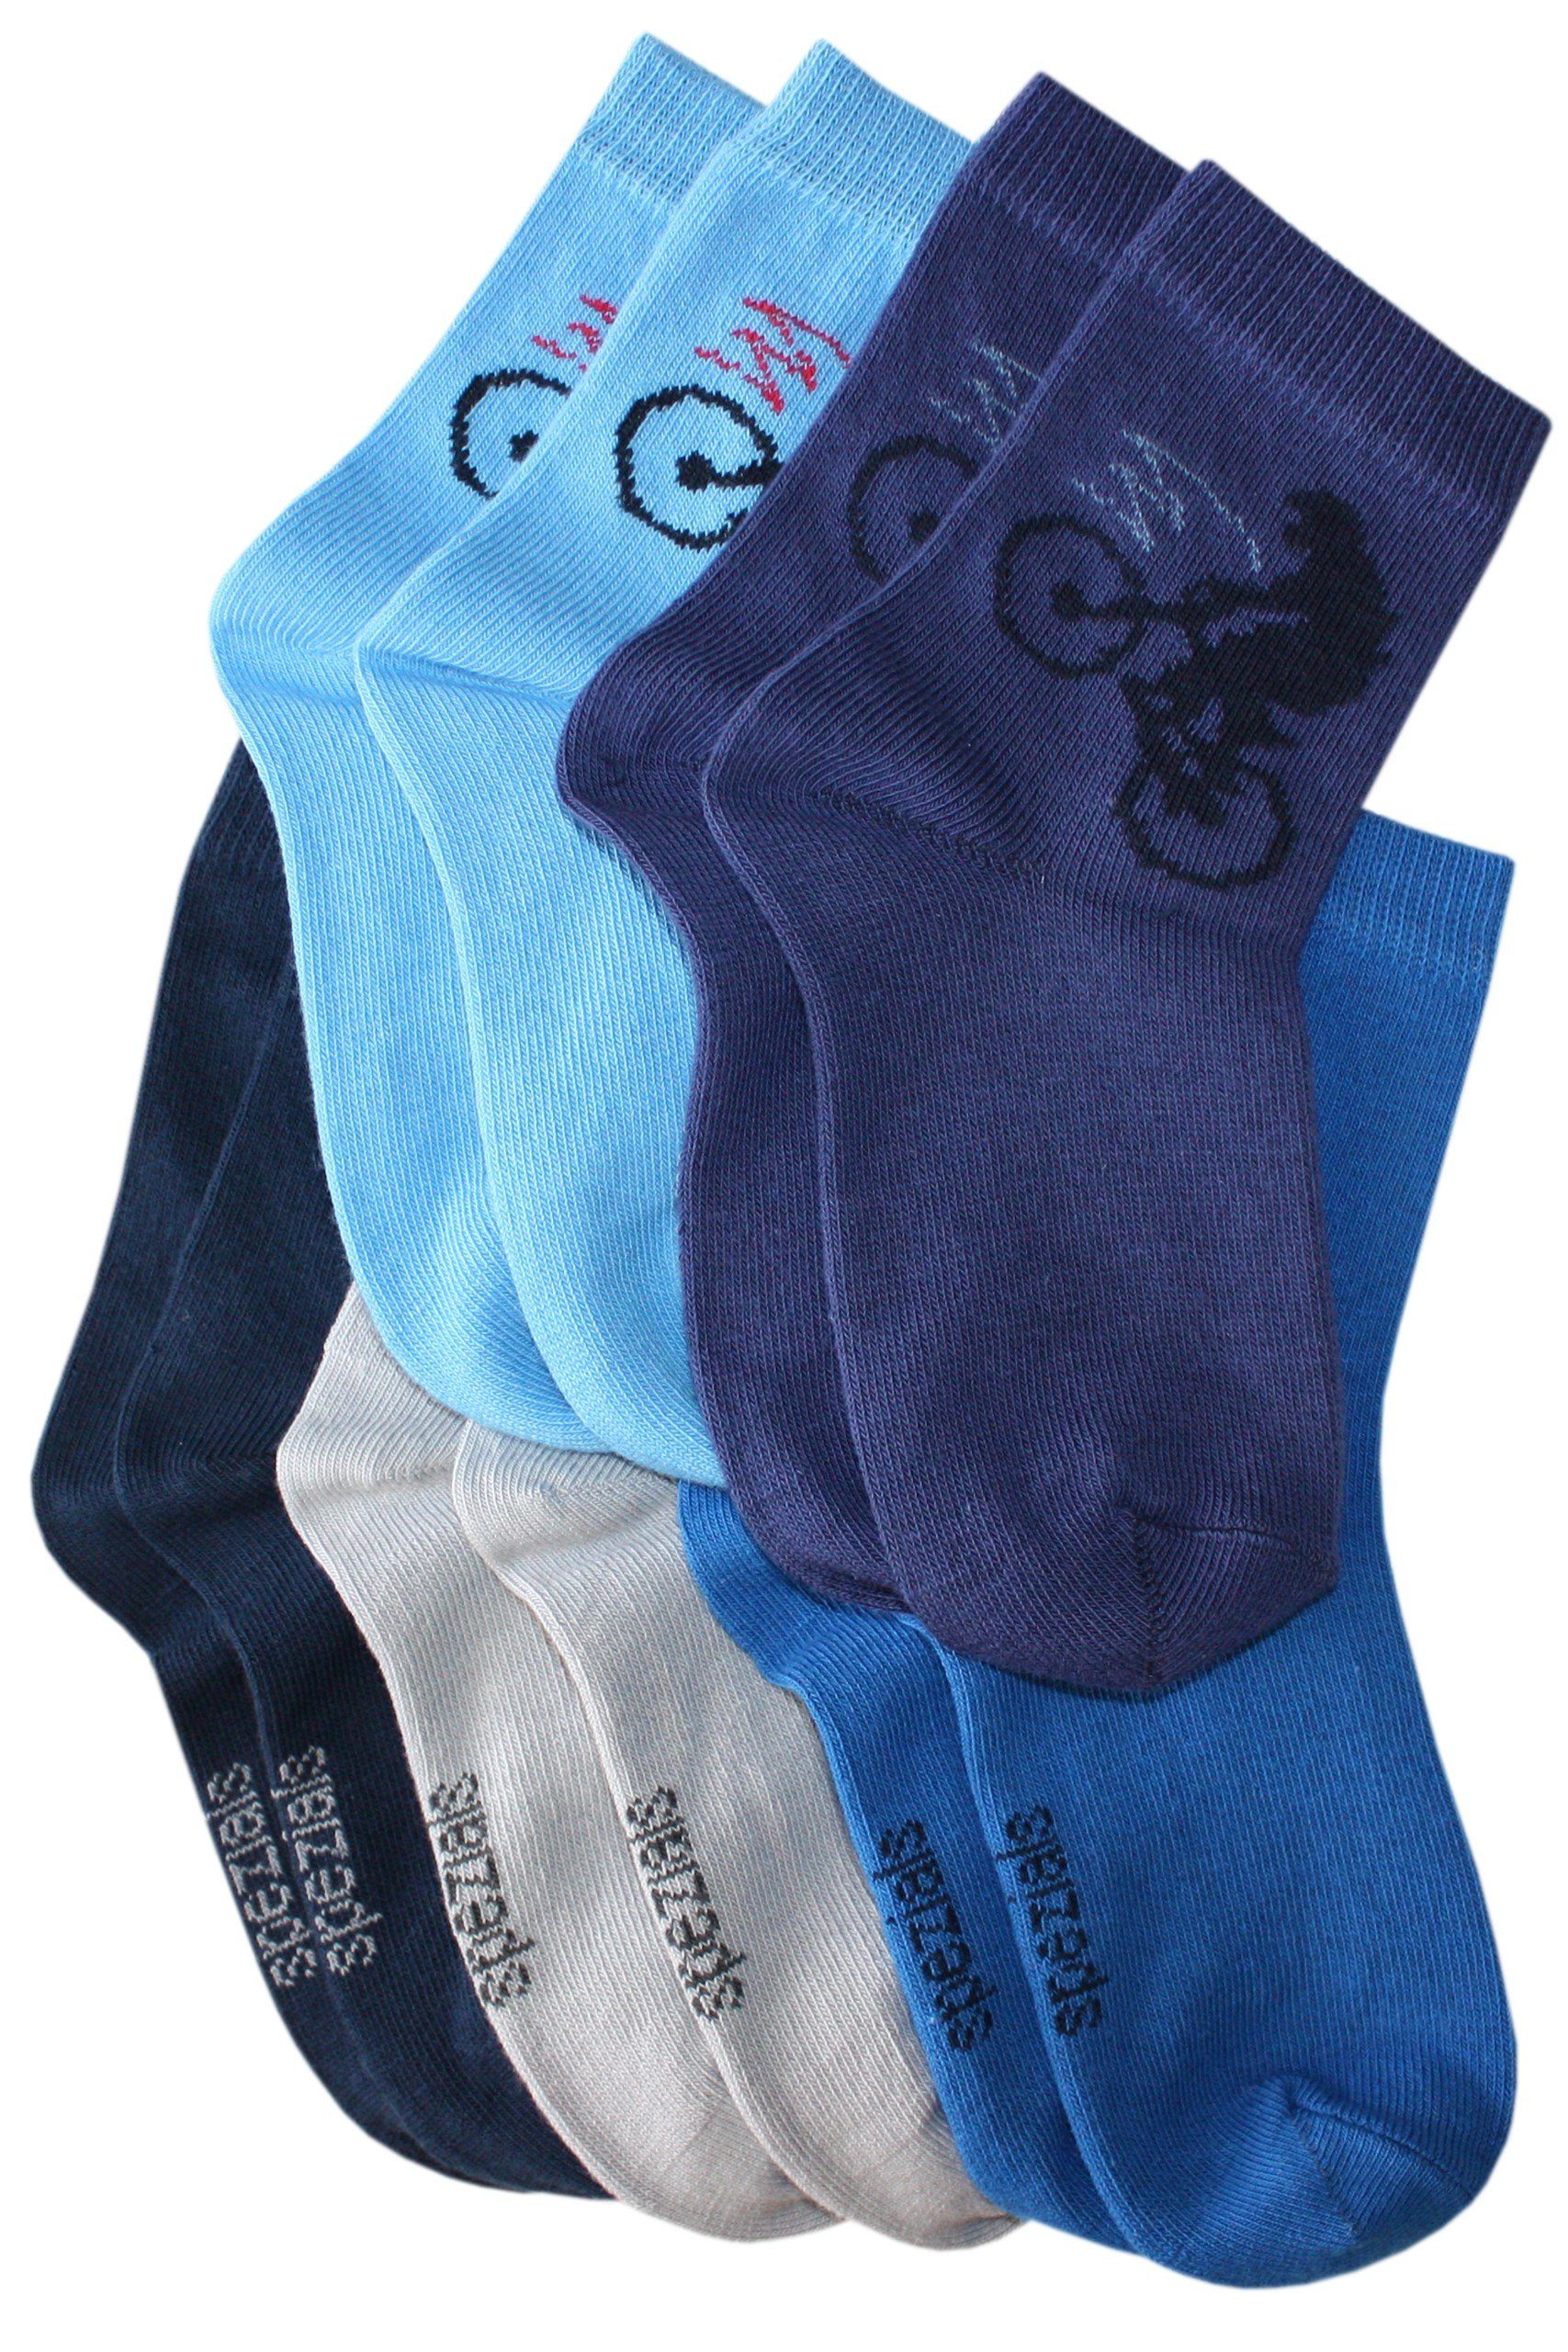 Wäsche/Bademode Socken WERI SPEZIALS Strumpfhersteller GmbH Socken Kinder Socken 5-er Pack für Jungs Biker aus Baumwolle (Set) 5